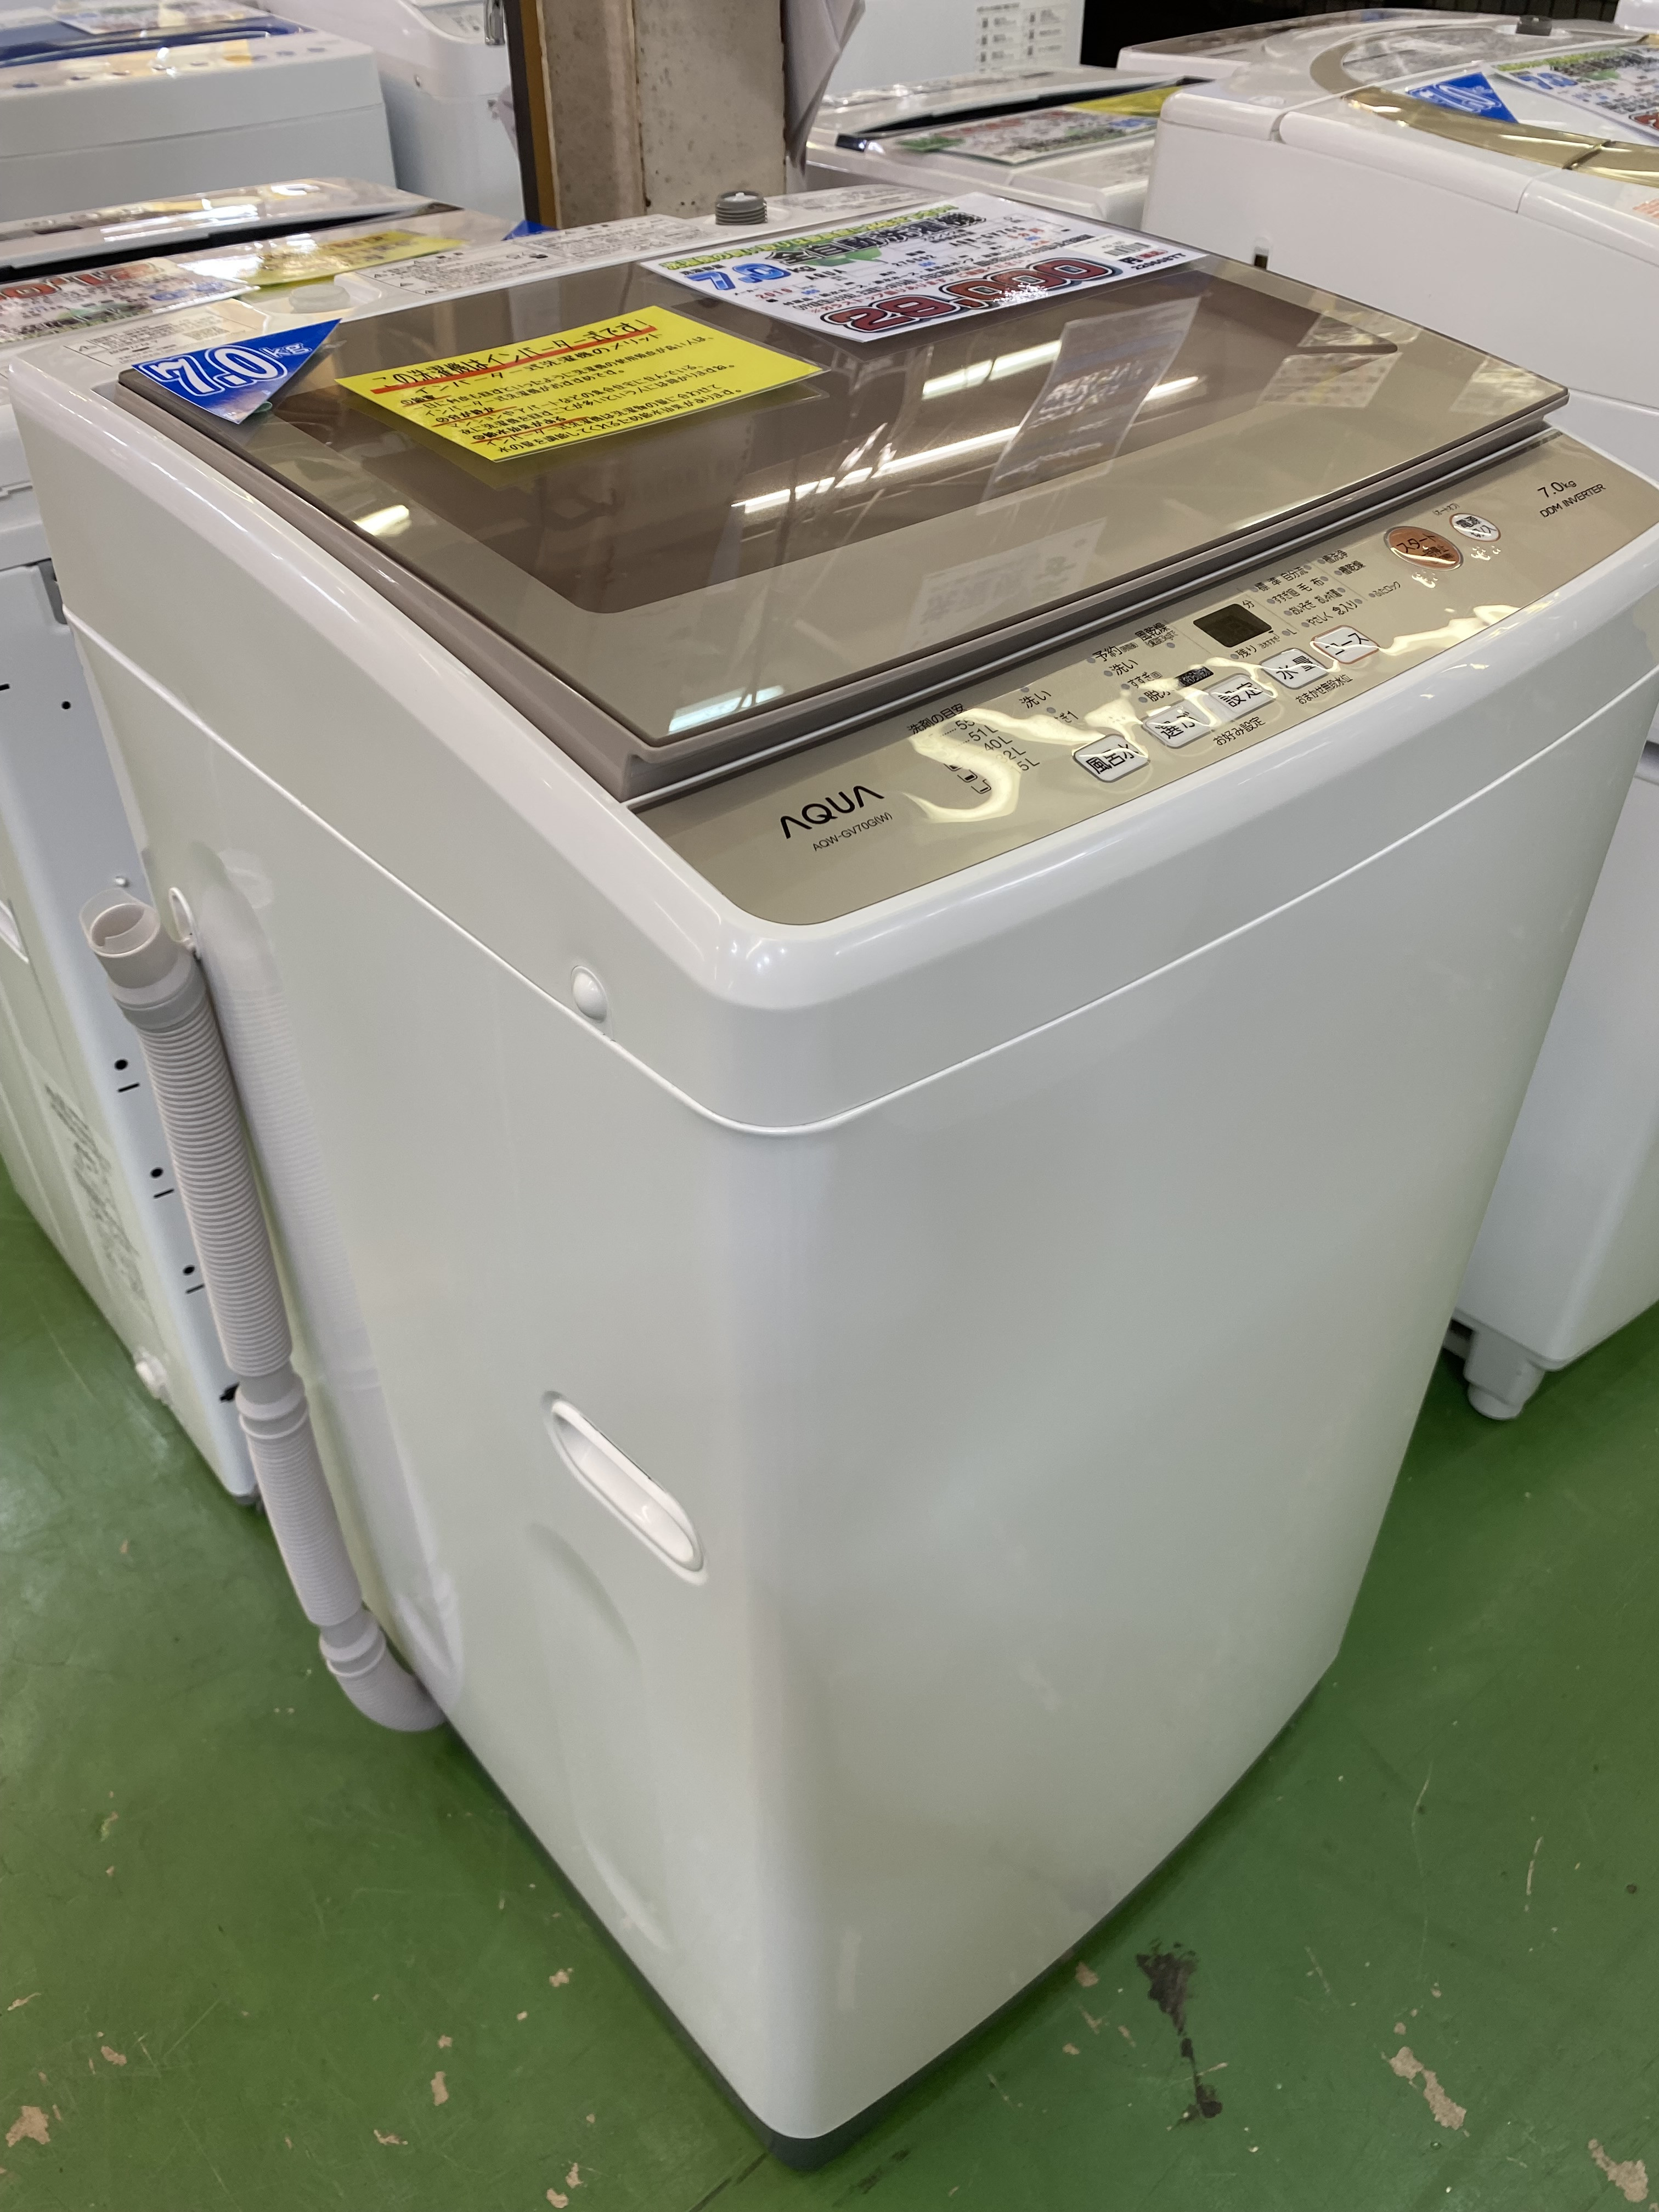 AQUA019年製7.0㎏全自動洗濯機AQW-GV70G 買取致しました。愛品館八千代